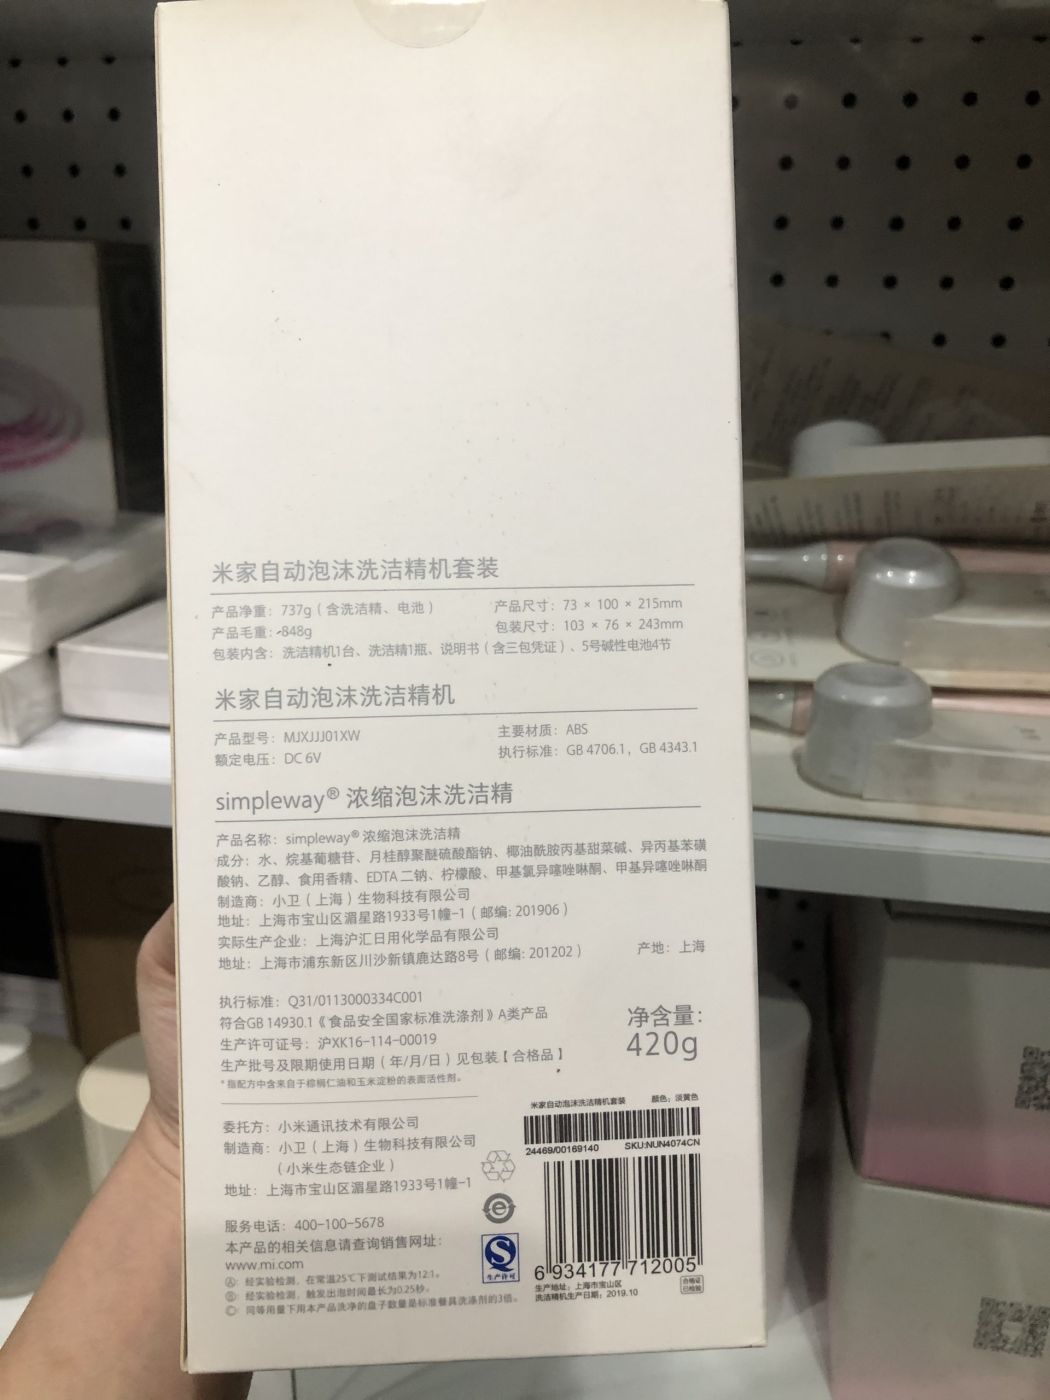 Máy Tạo Bọt Tự Động (rửa bát) Xiaomi Mijia Automatic Foam Detergent Set MJXJJJ01XW